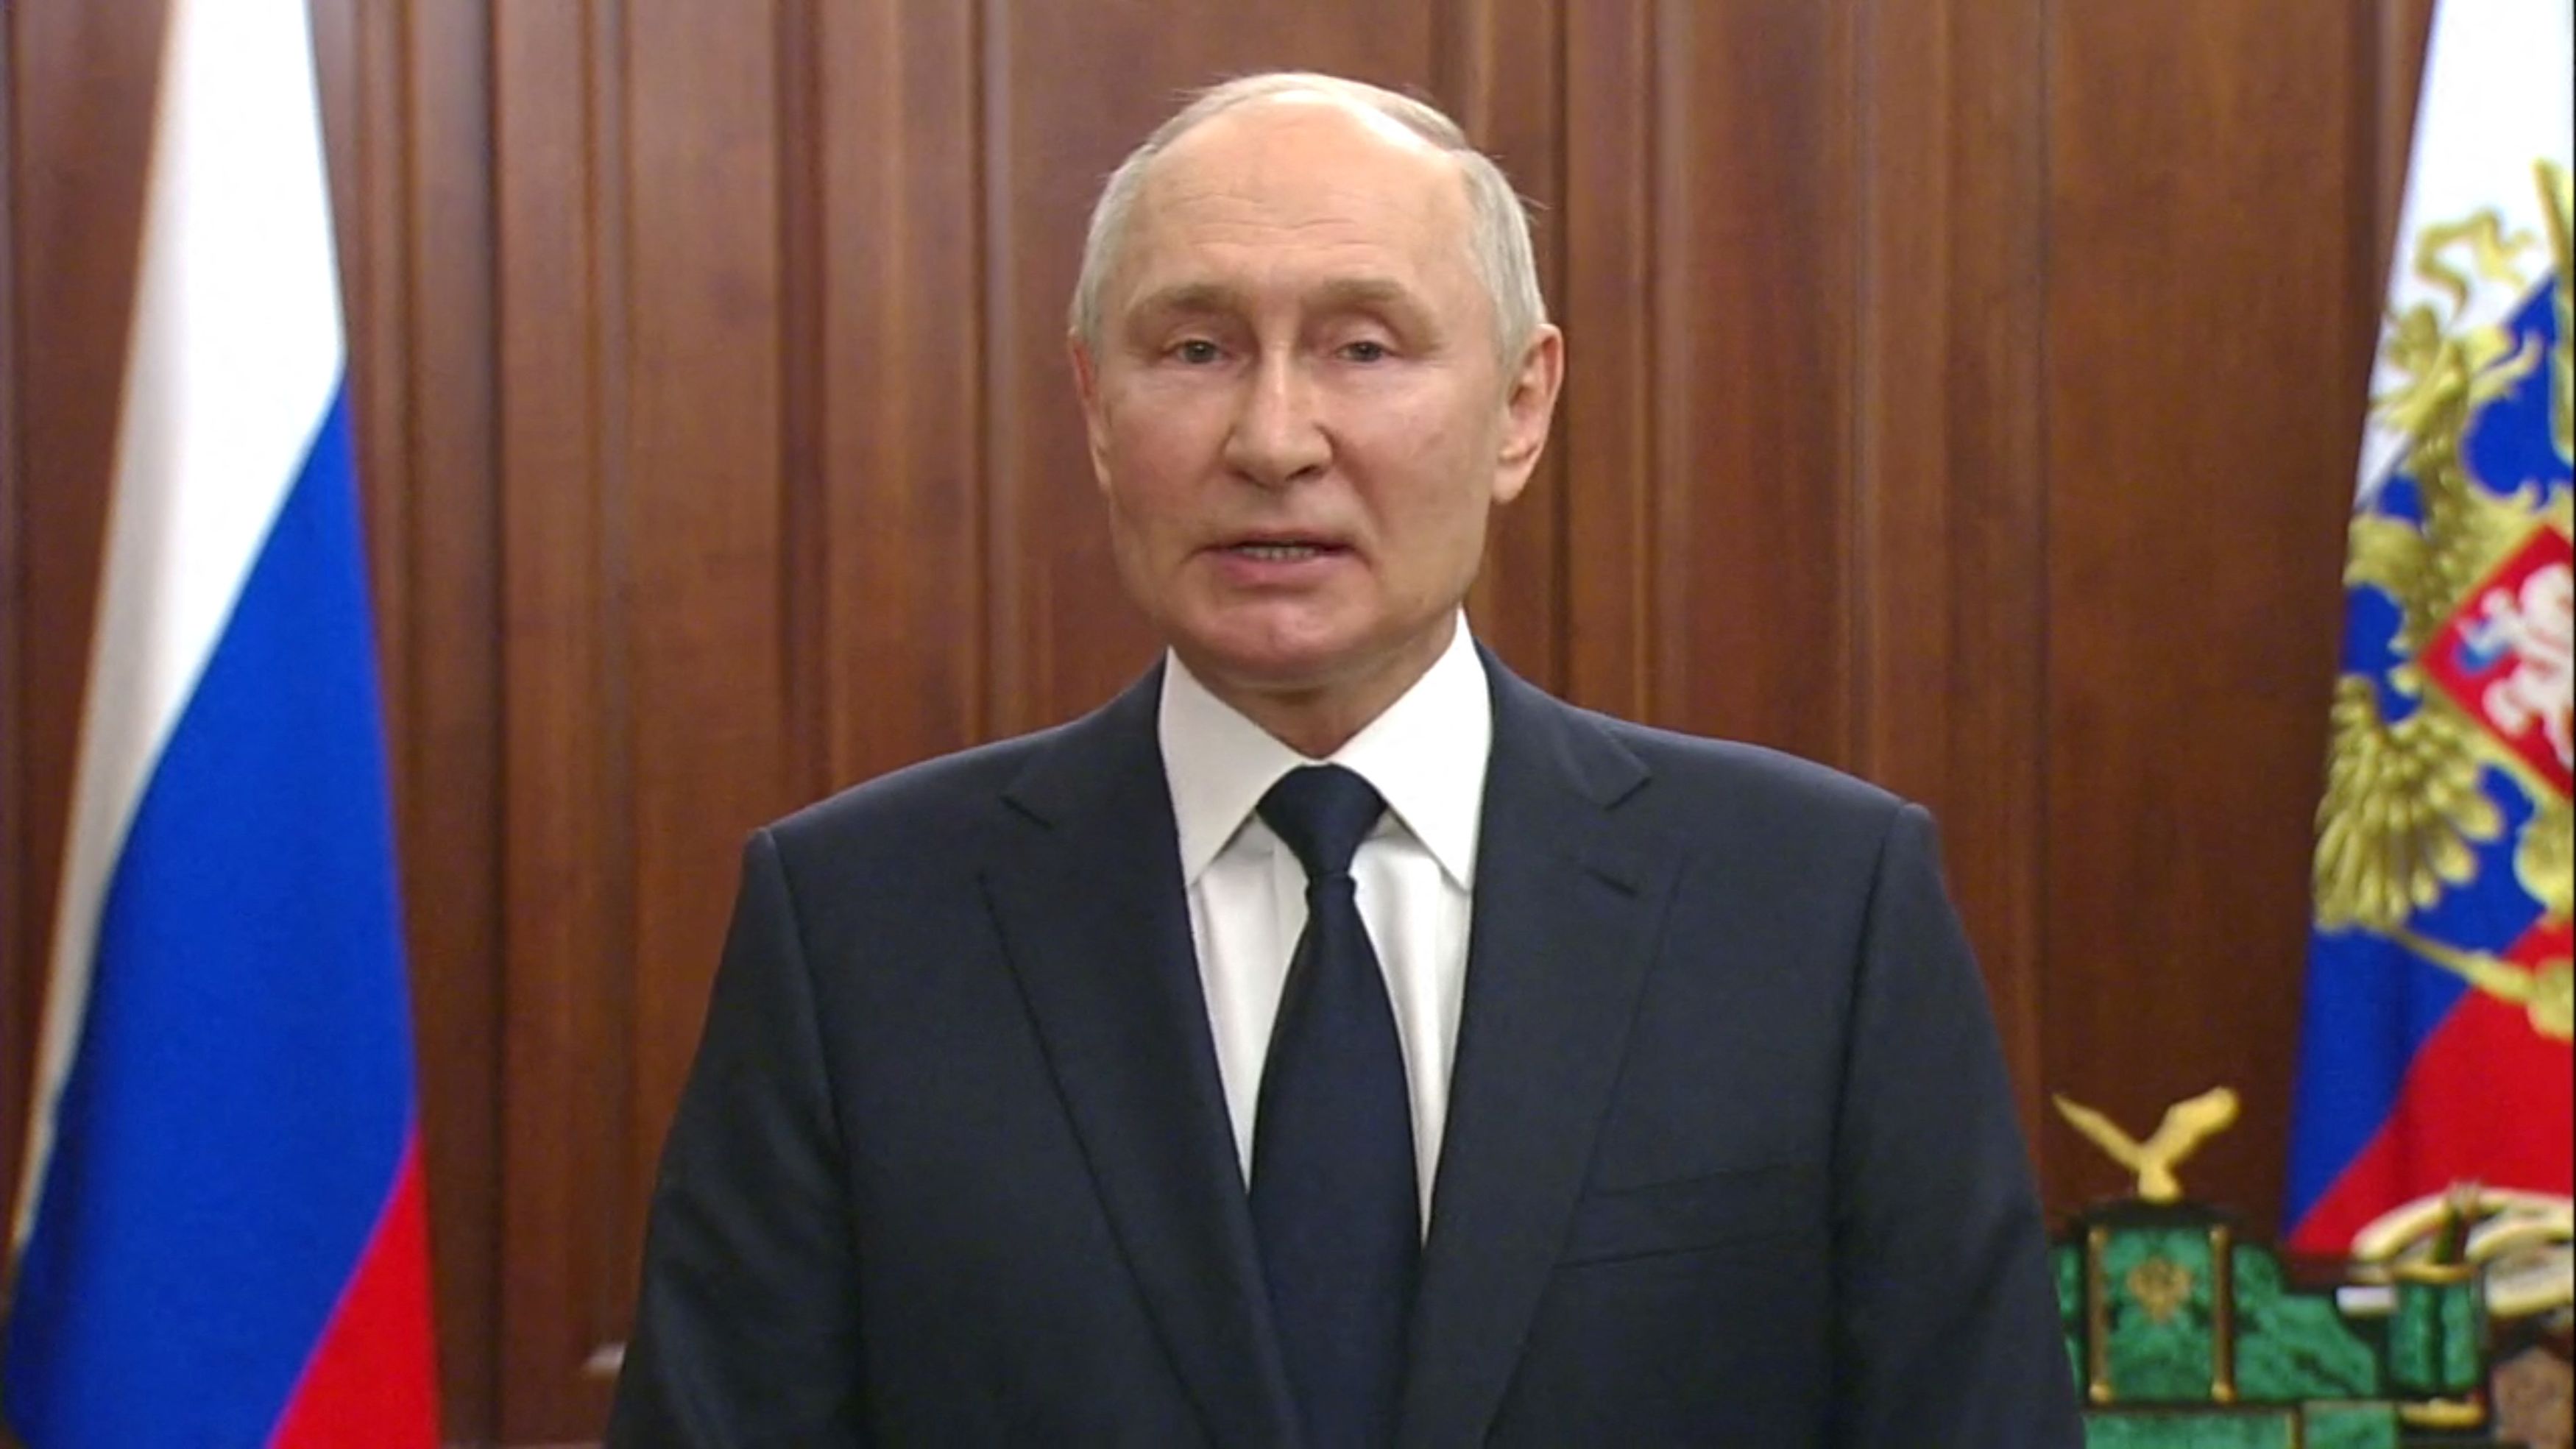 Πούτιν: Στη Δικαιοσύνη όσοι θέλησαν να πνίξουν τη Ρωσία στο αίμα - Τρεις επιλογές για τους μισθοφόρους